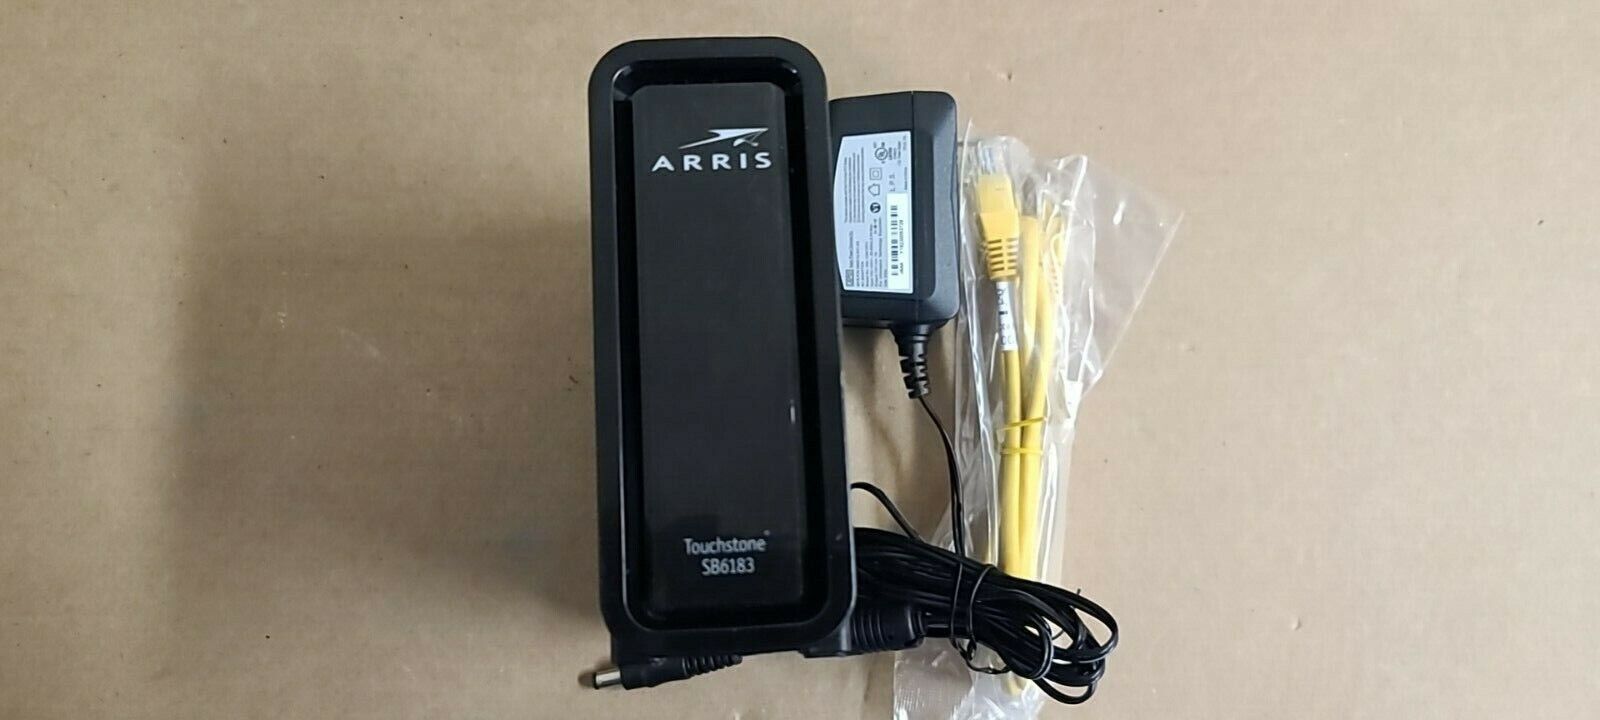  ARRIS SURFboard SB6183 Cable Modem 16x4 Channels DOCSIS 3.0 - Black